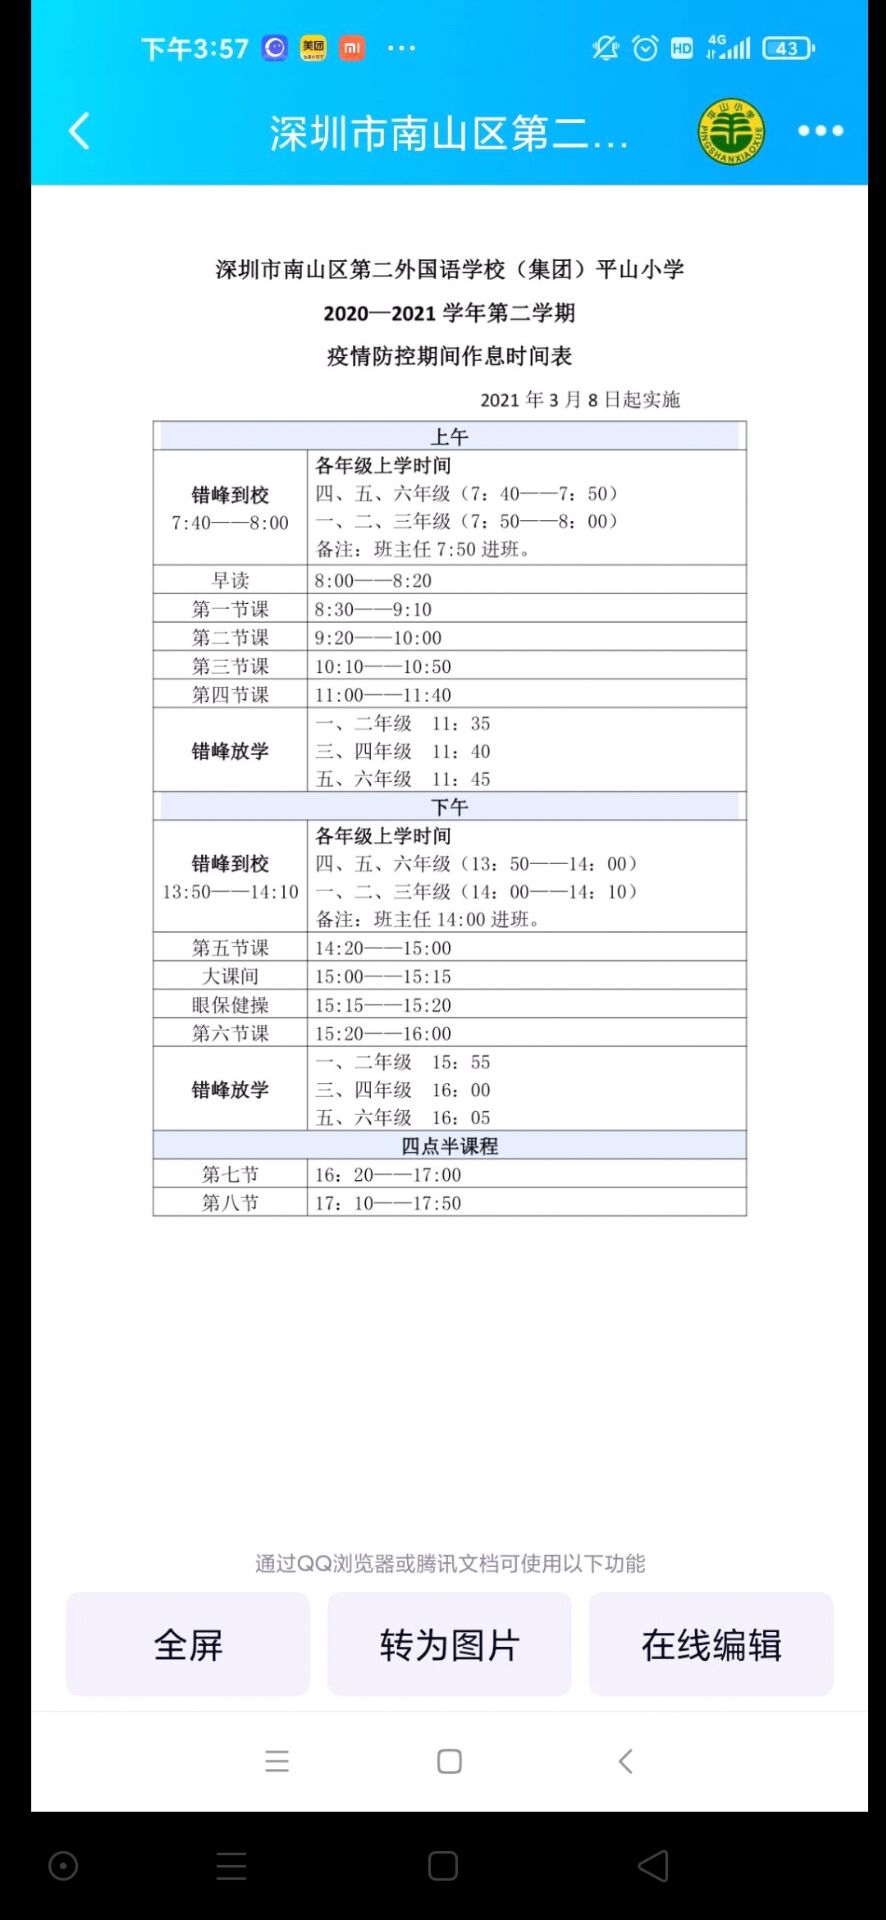 深圳平山小学放学上学时间表1